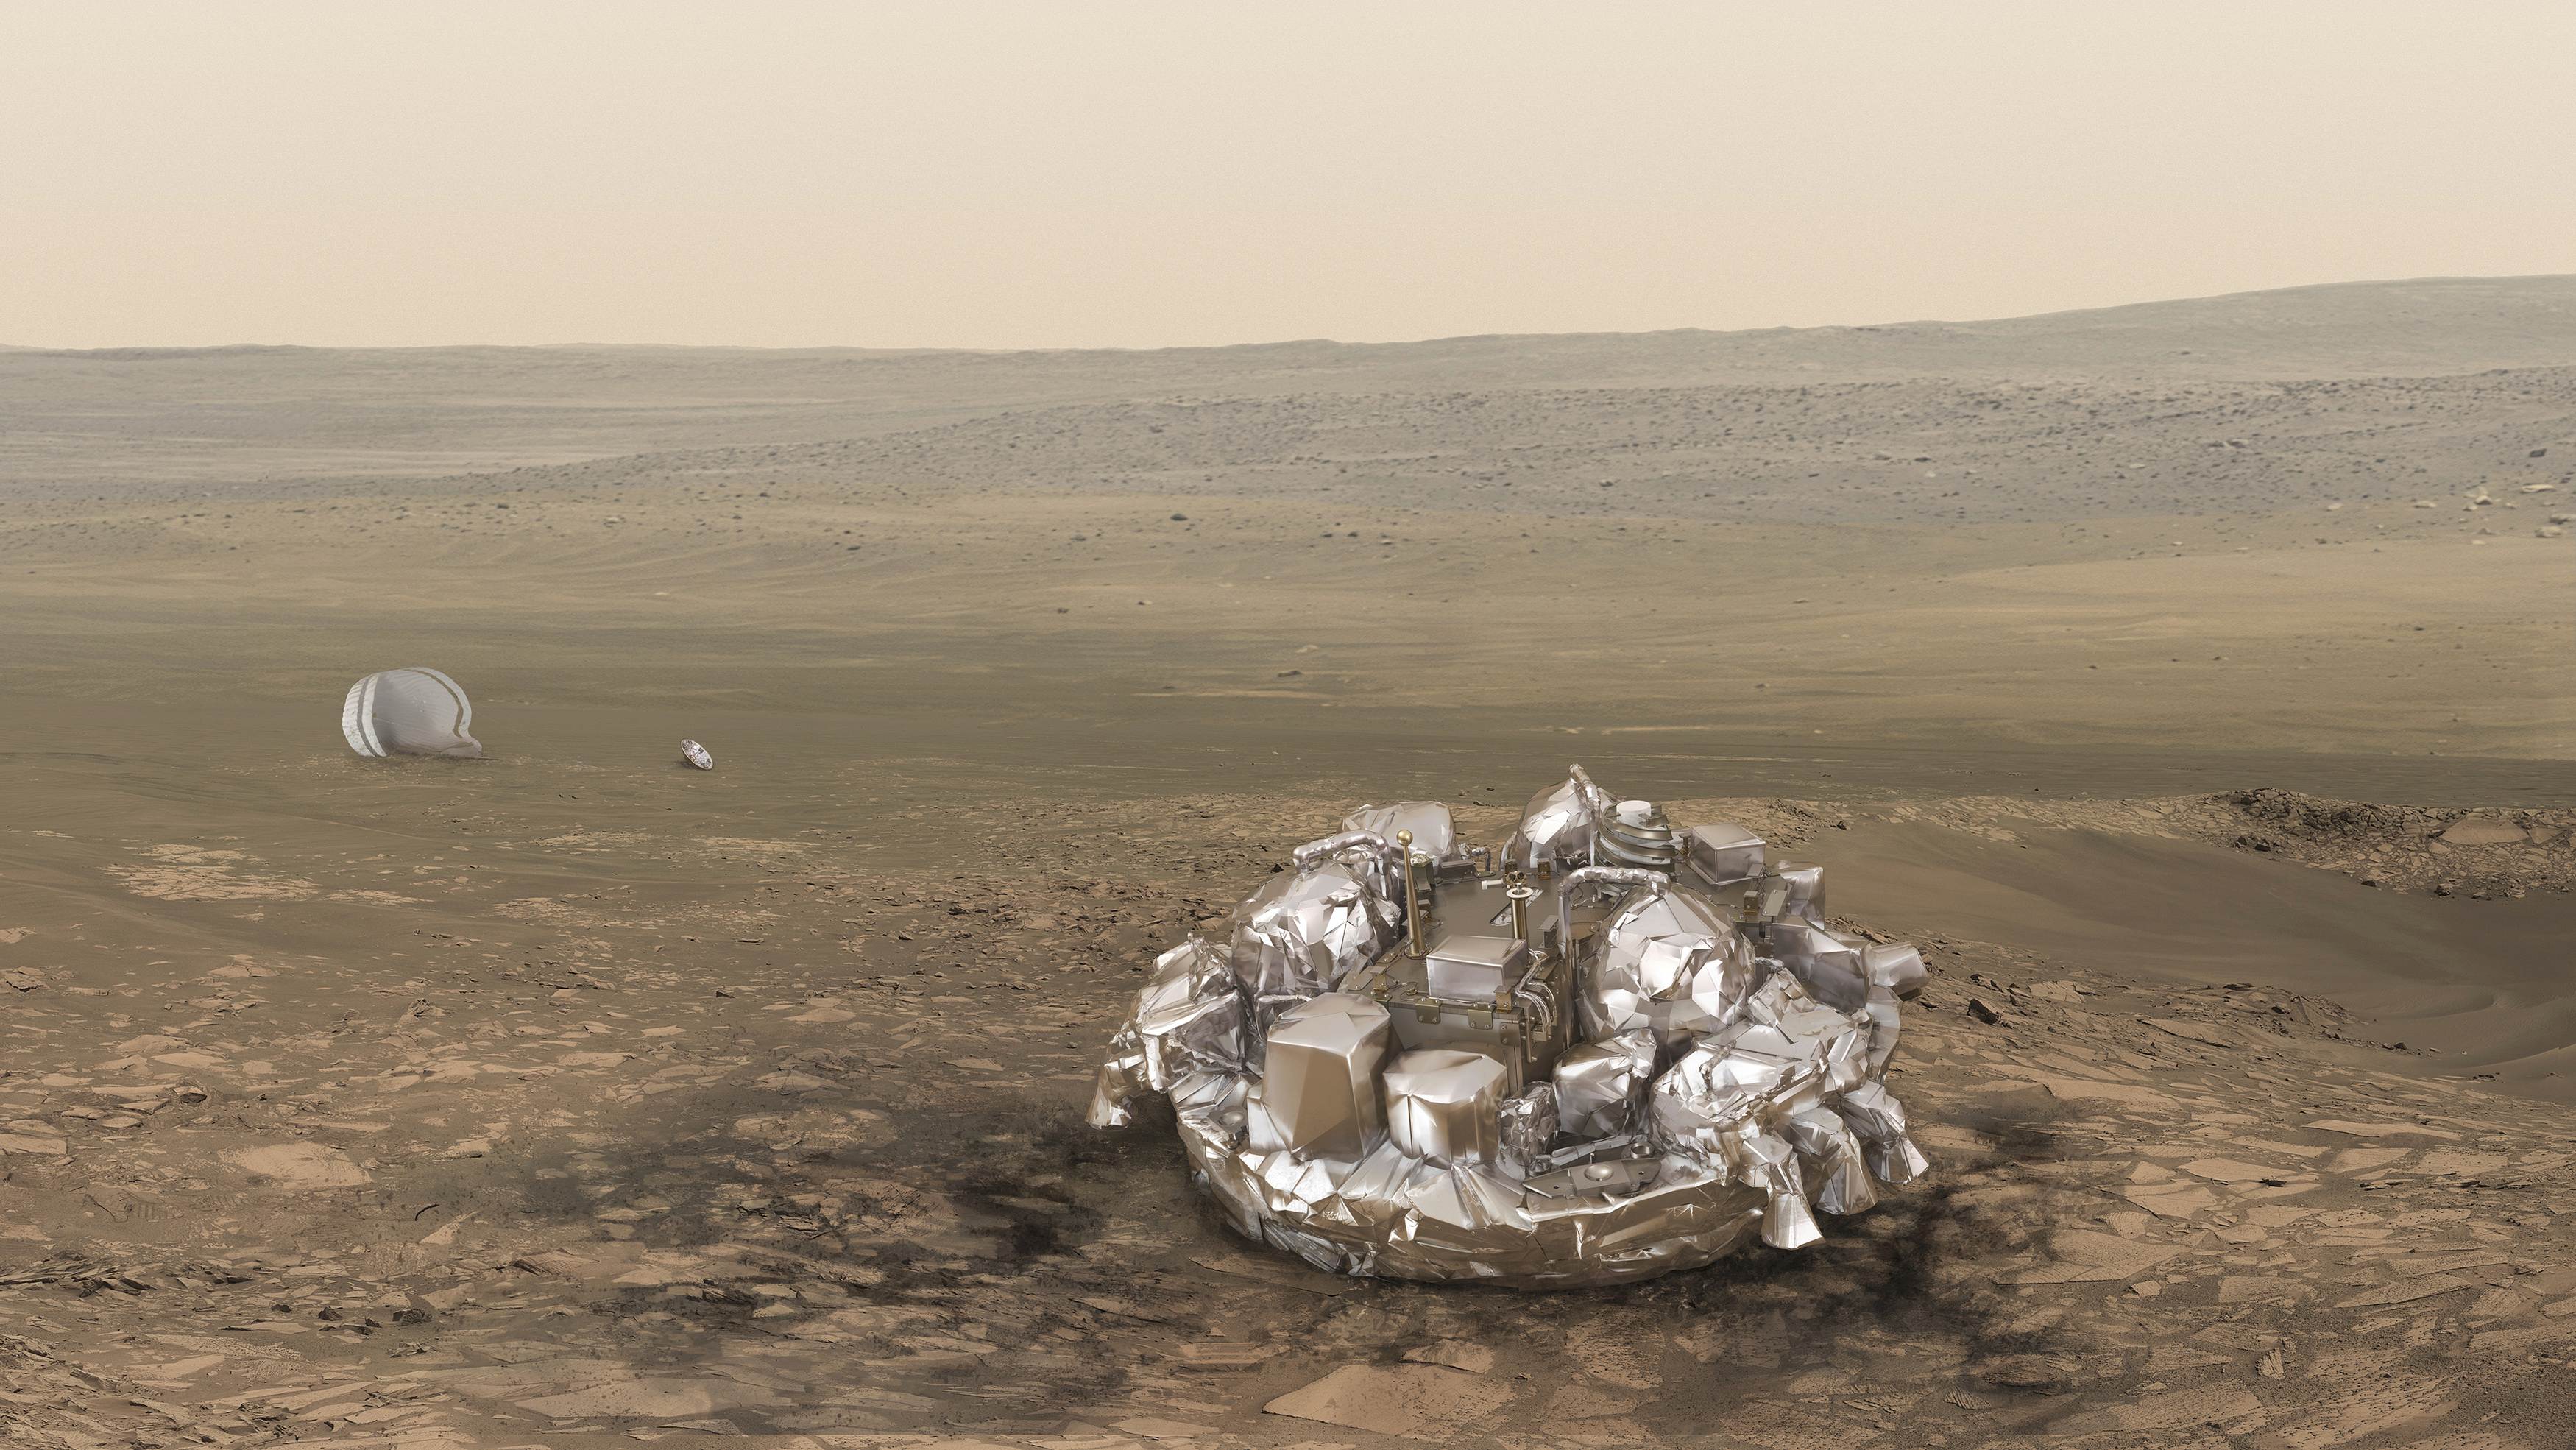 Οι εικόνες επιβεβαιώνουν ότι το Schiaparelli συνετρίβη στον Αρη